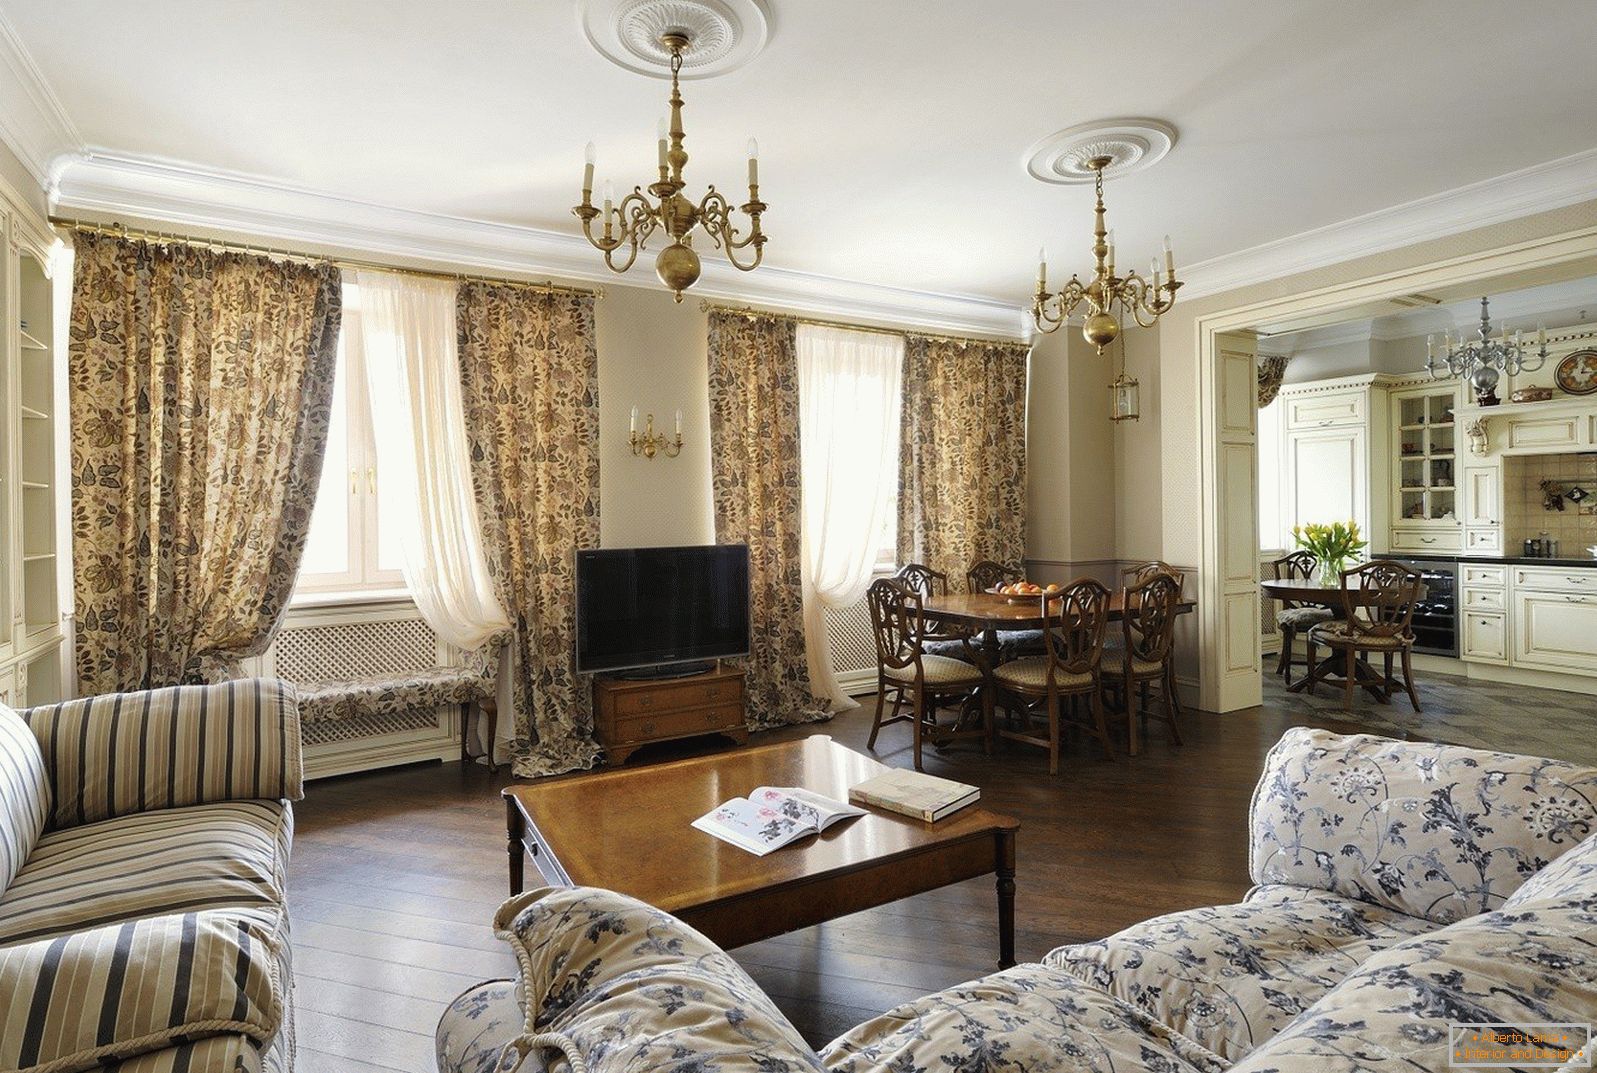 Sala de estar em estilo clássico com duas janelas